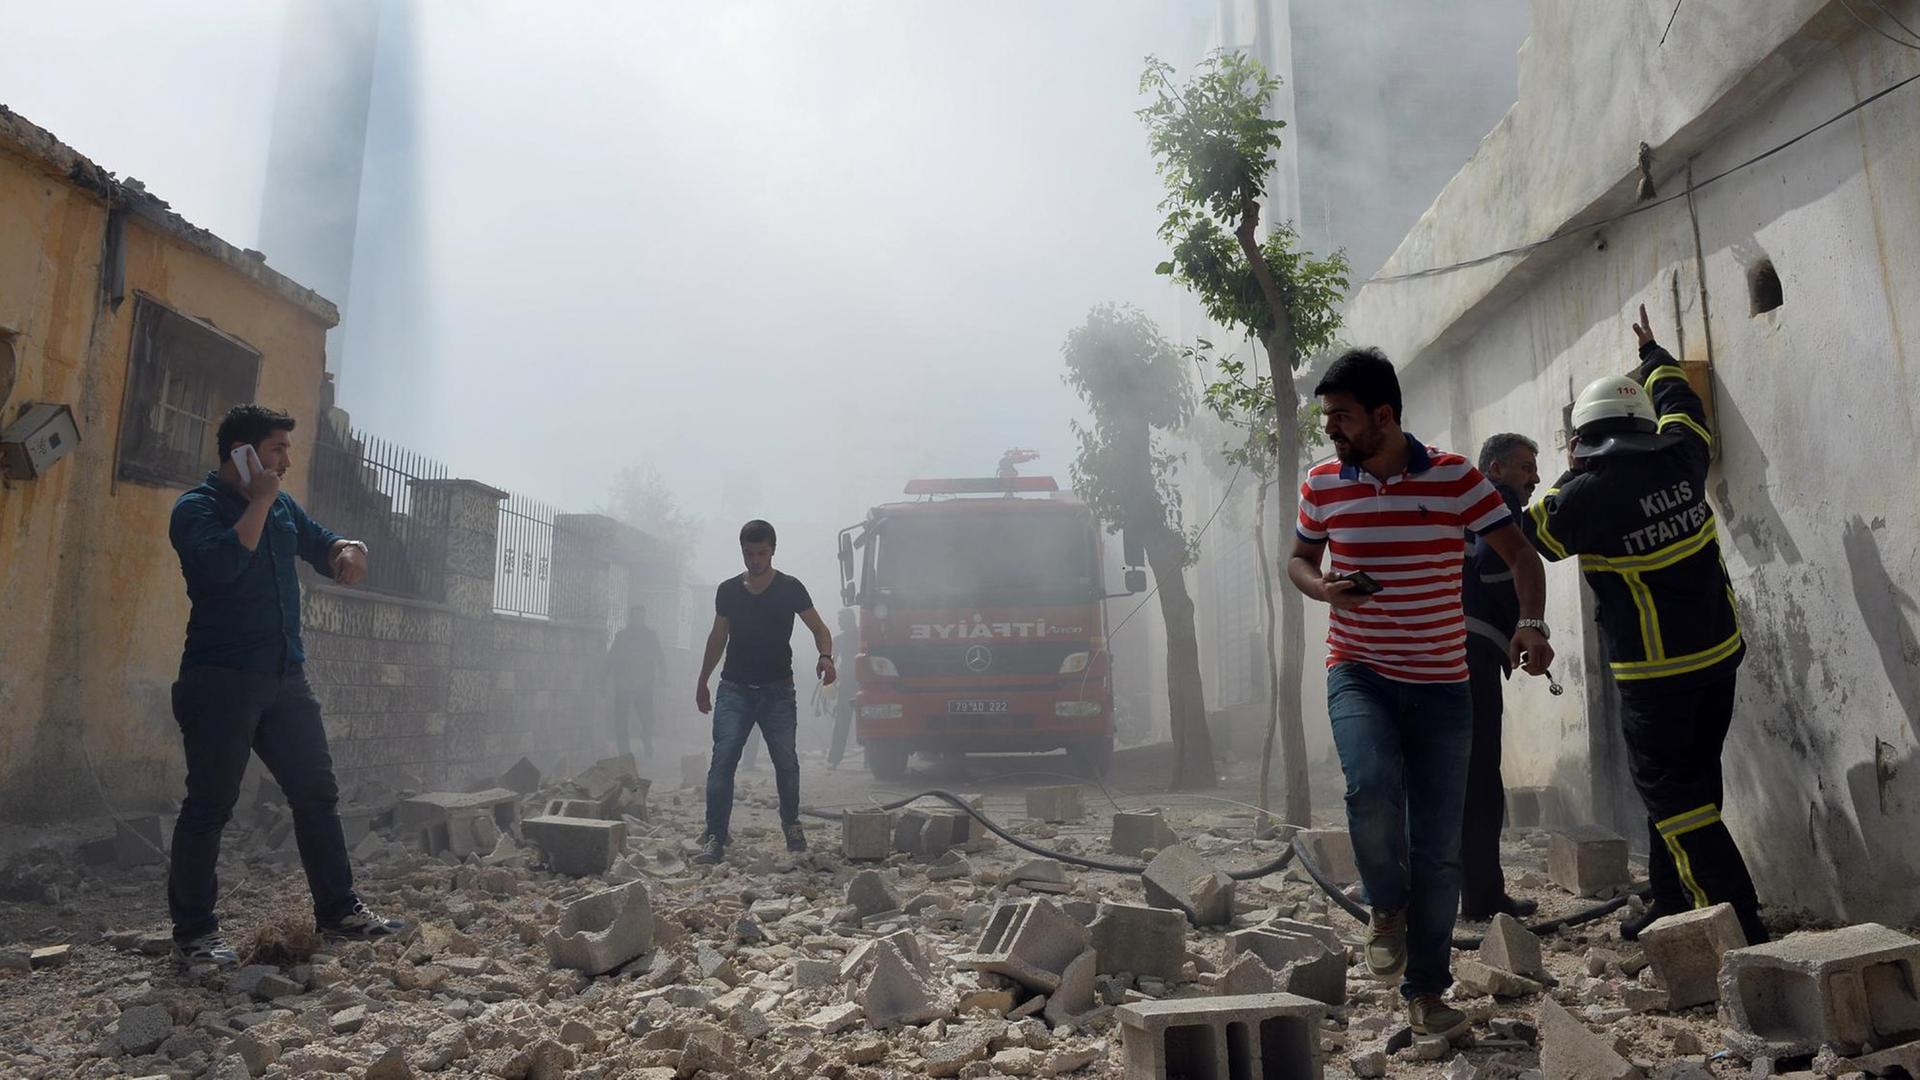 Nach Raketenangriffen auf Kilis (Bild) hat die Türkei IS-Stellungen in Syrien angegriffen. Menschen laufen durch die Trümmer in den Straßen.